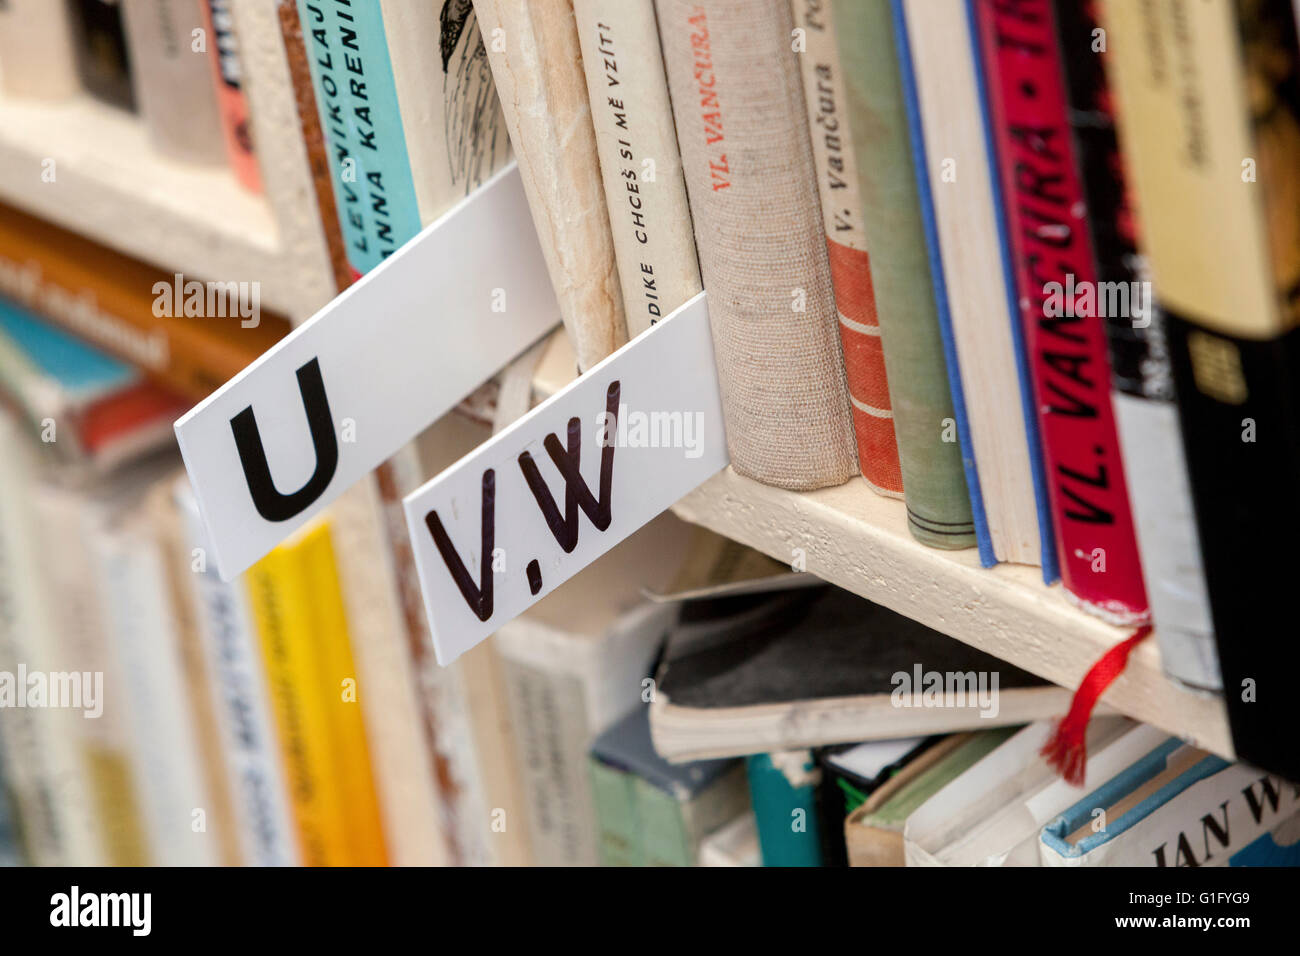 Alphabetische Sortierung von Büchern, die in den Regalen liegen, Bibliotheksbücher im Regal Stockfoto